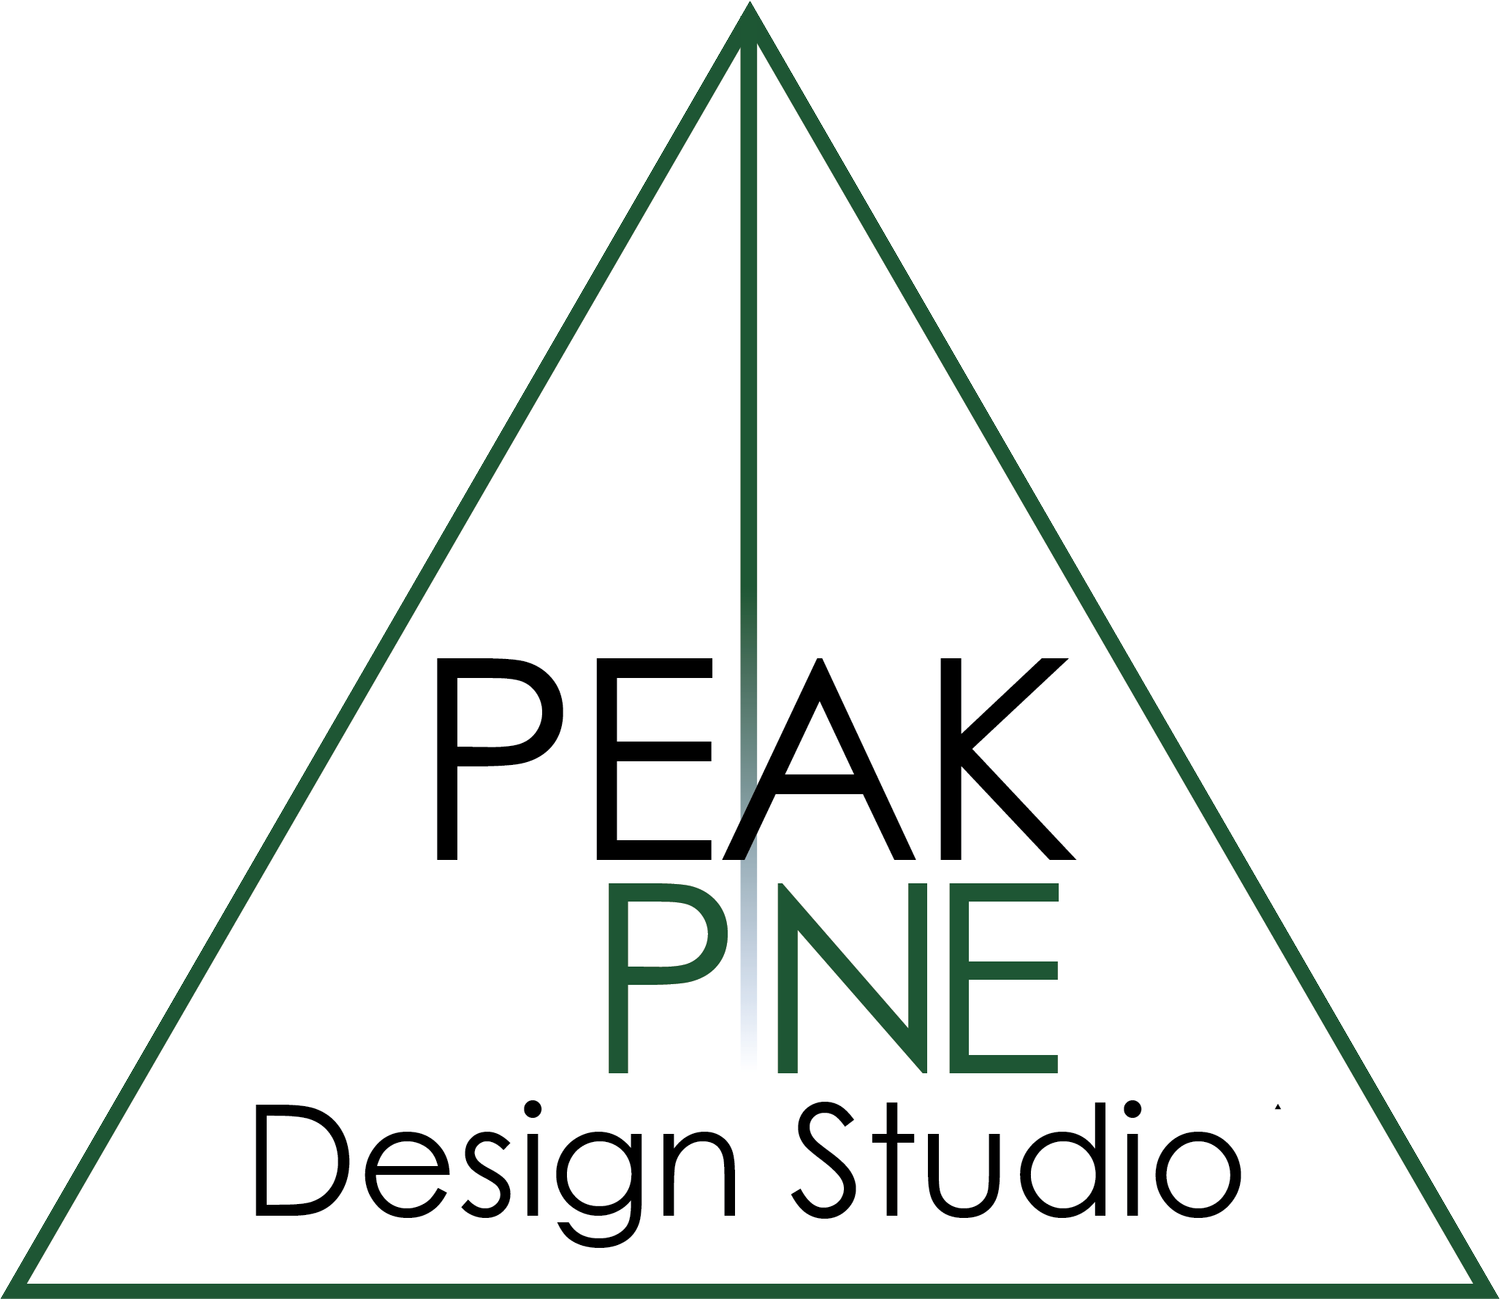 PeakPine Design Studio